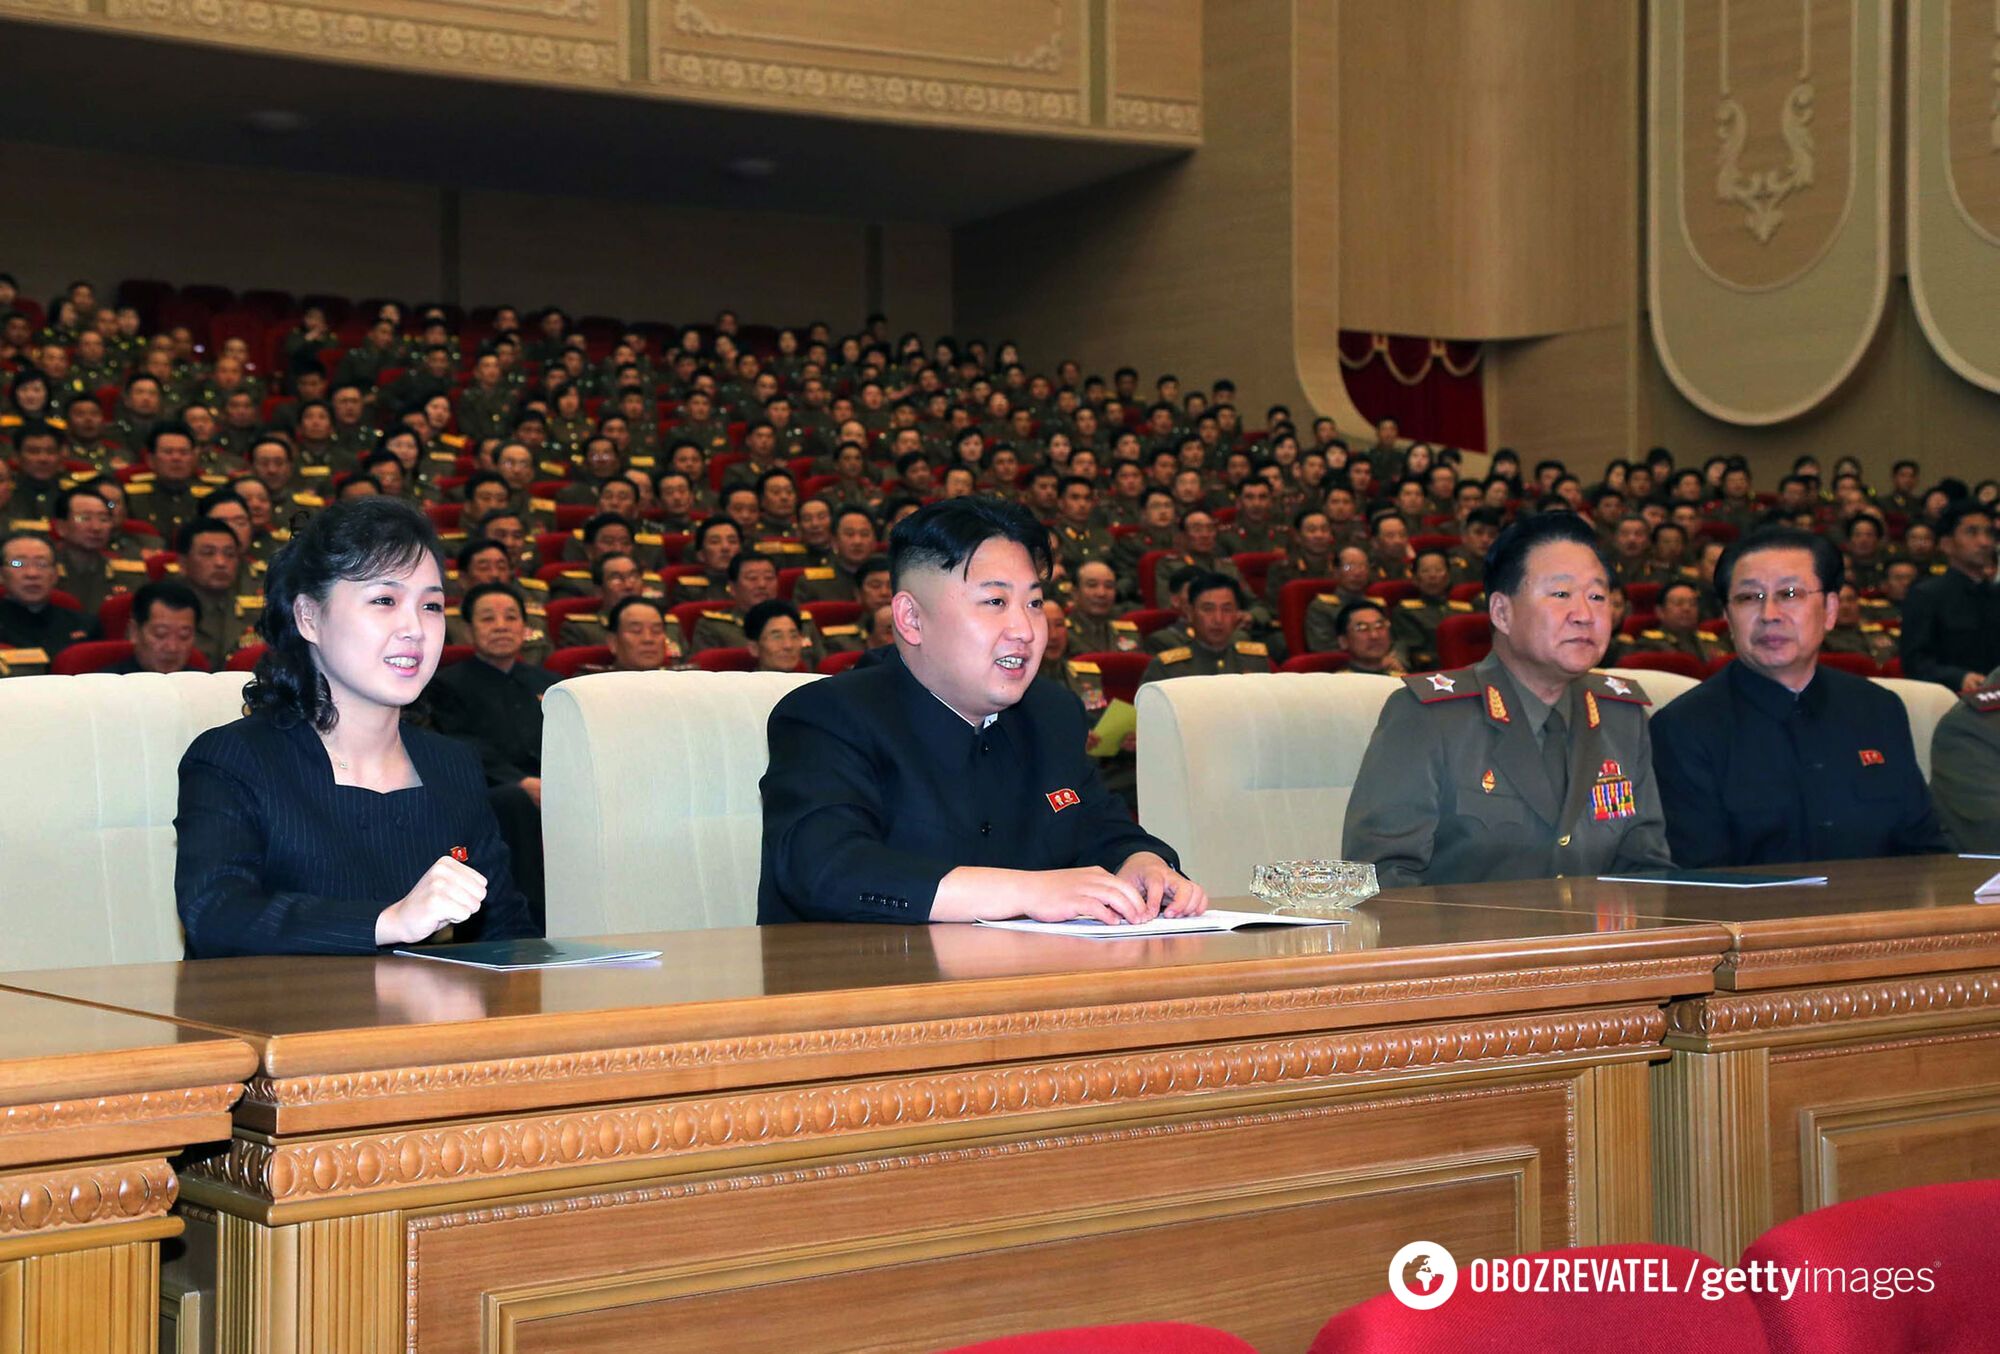 Жена носит Dior и Chanel, а дочь готовят в лидеры КНДР: что скрывает "сумасшедший диктатор" Ким Чен Ын